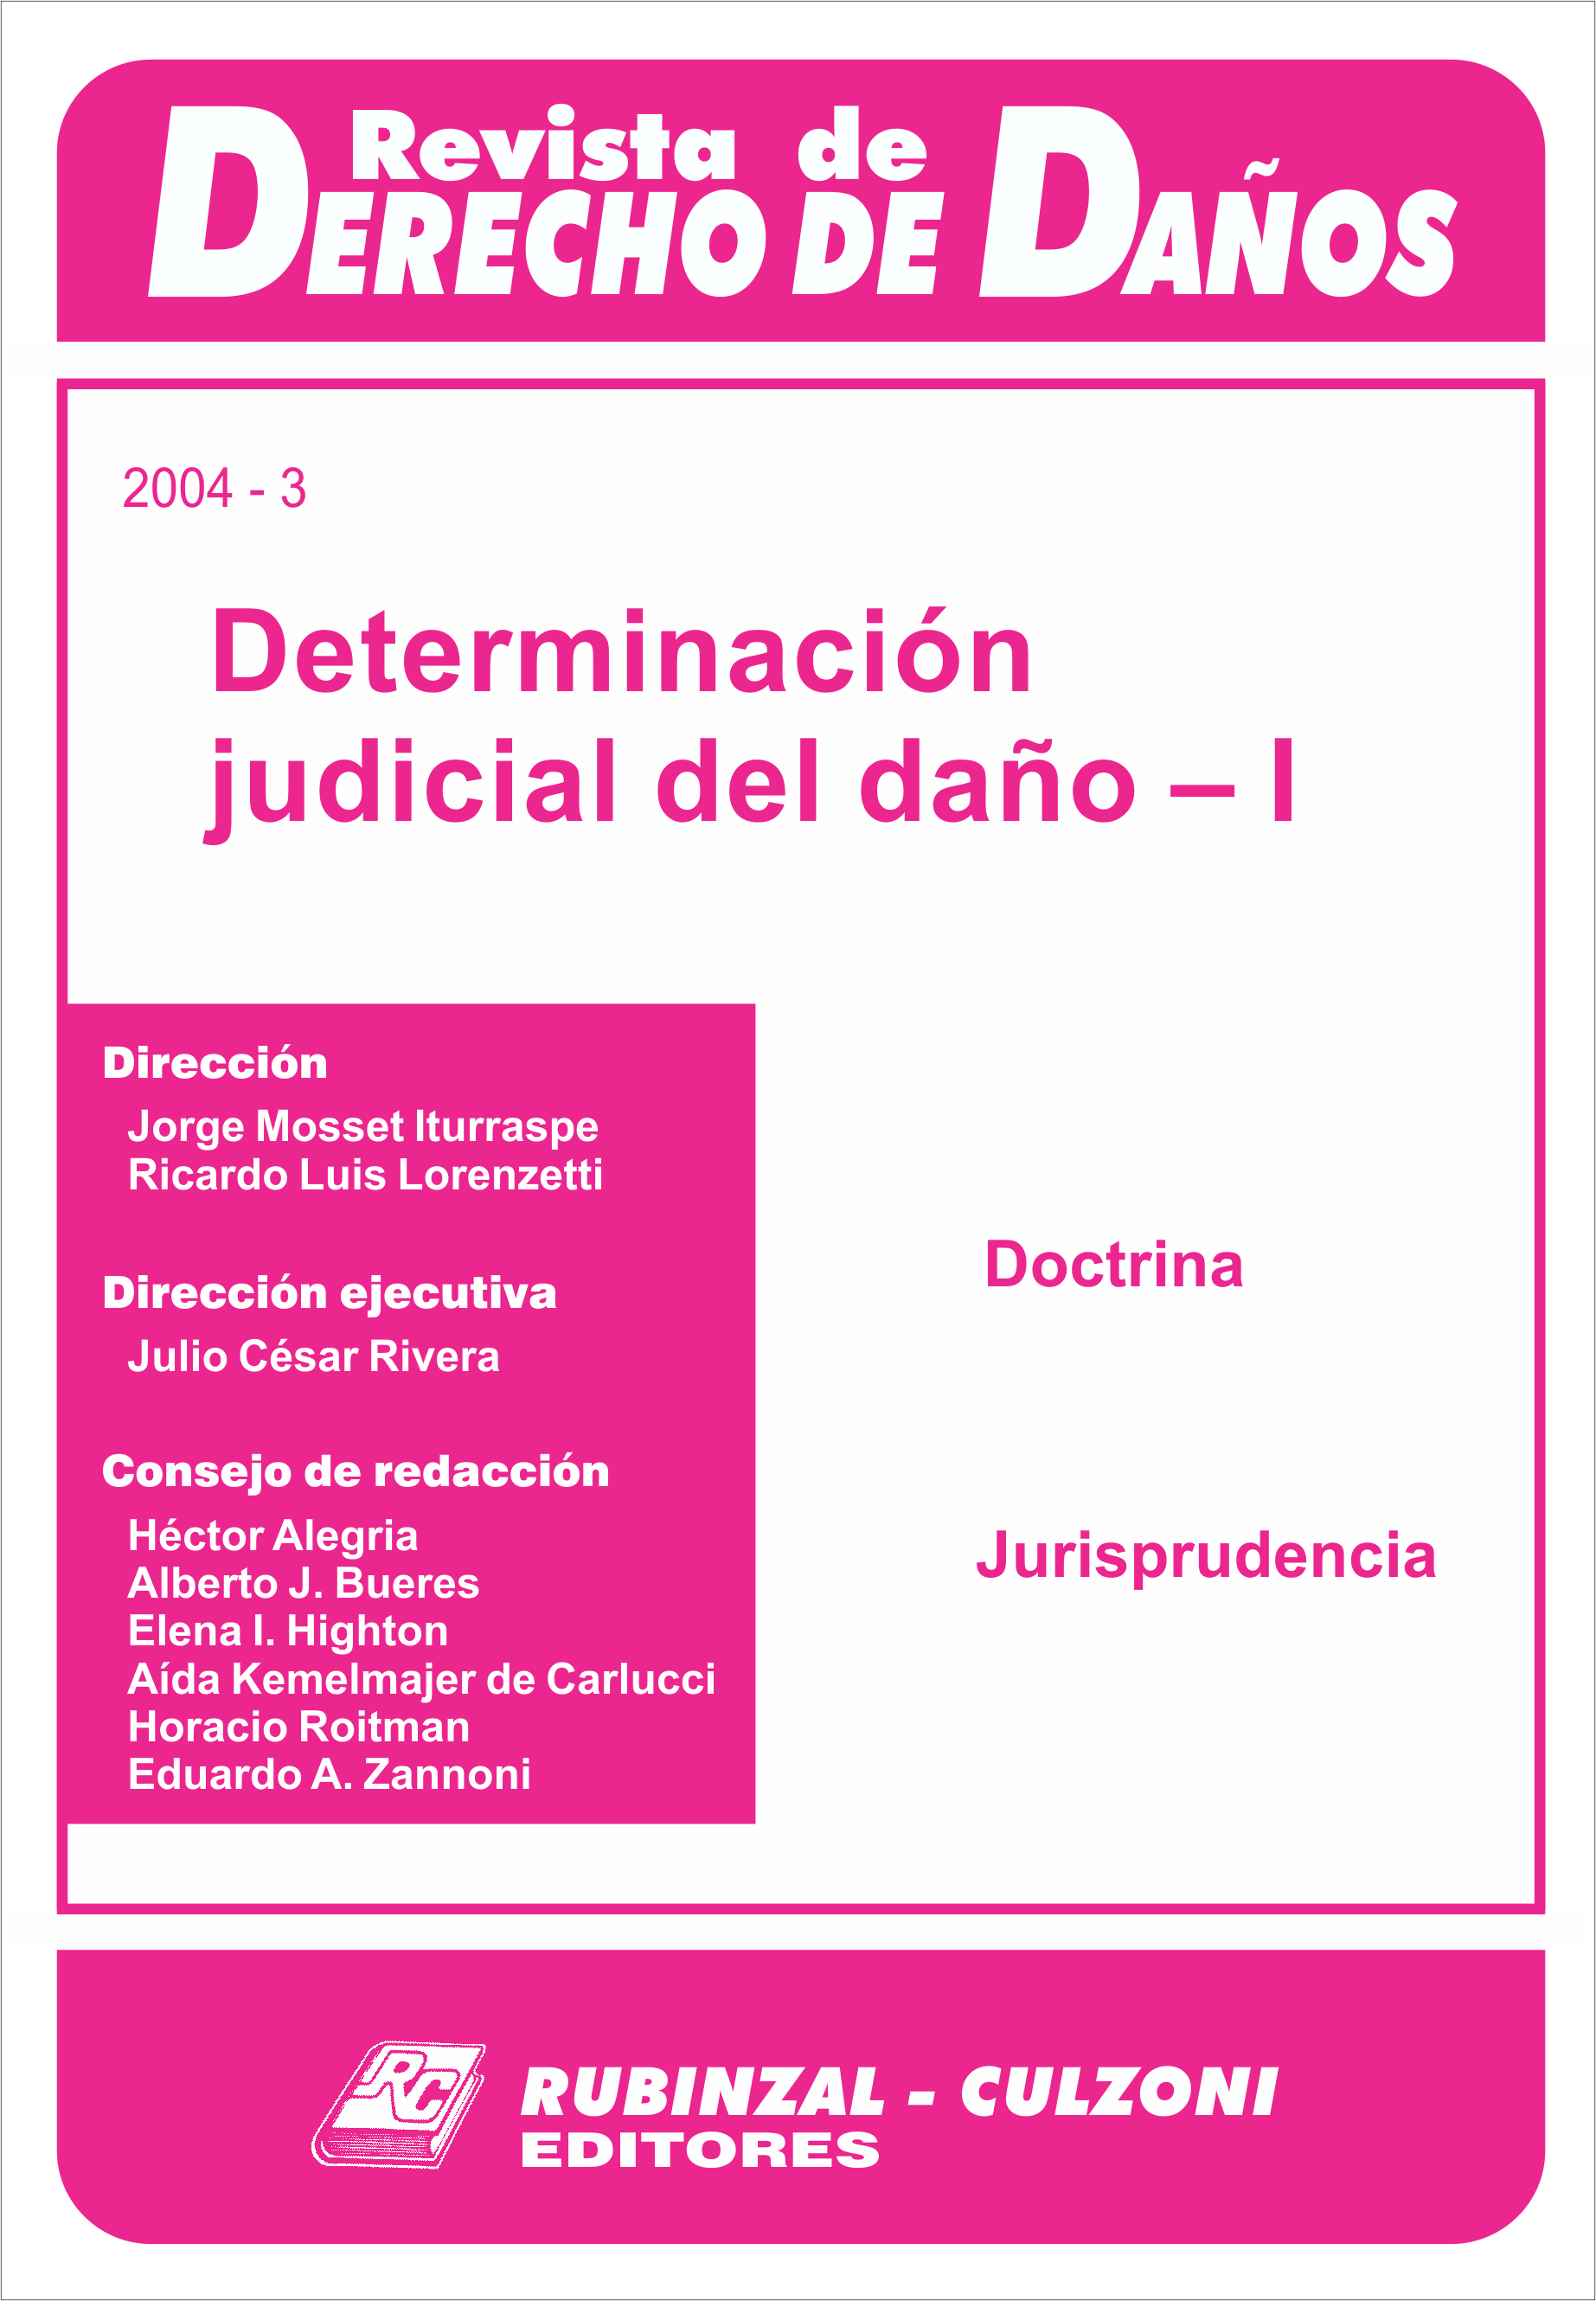 Revista de Derecho de Daños - Determinación judicial del daño - I